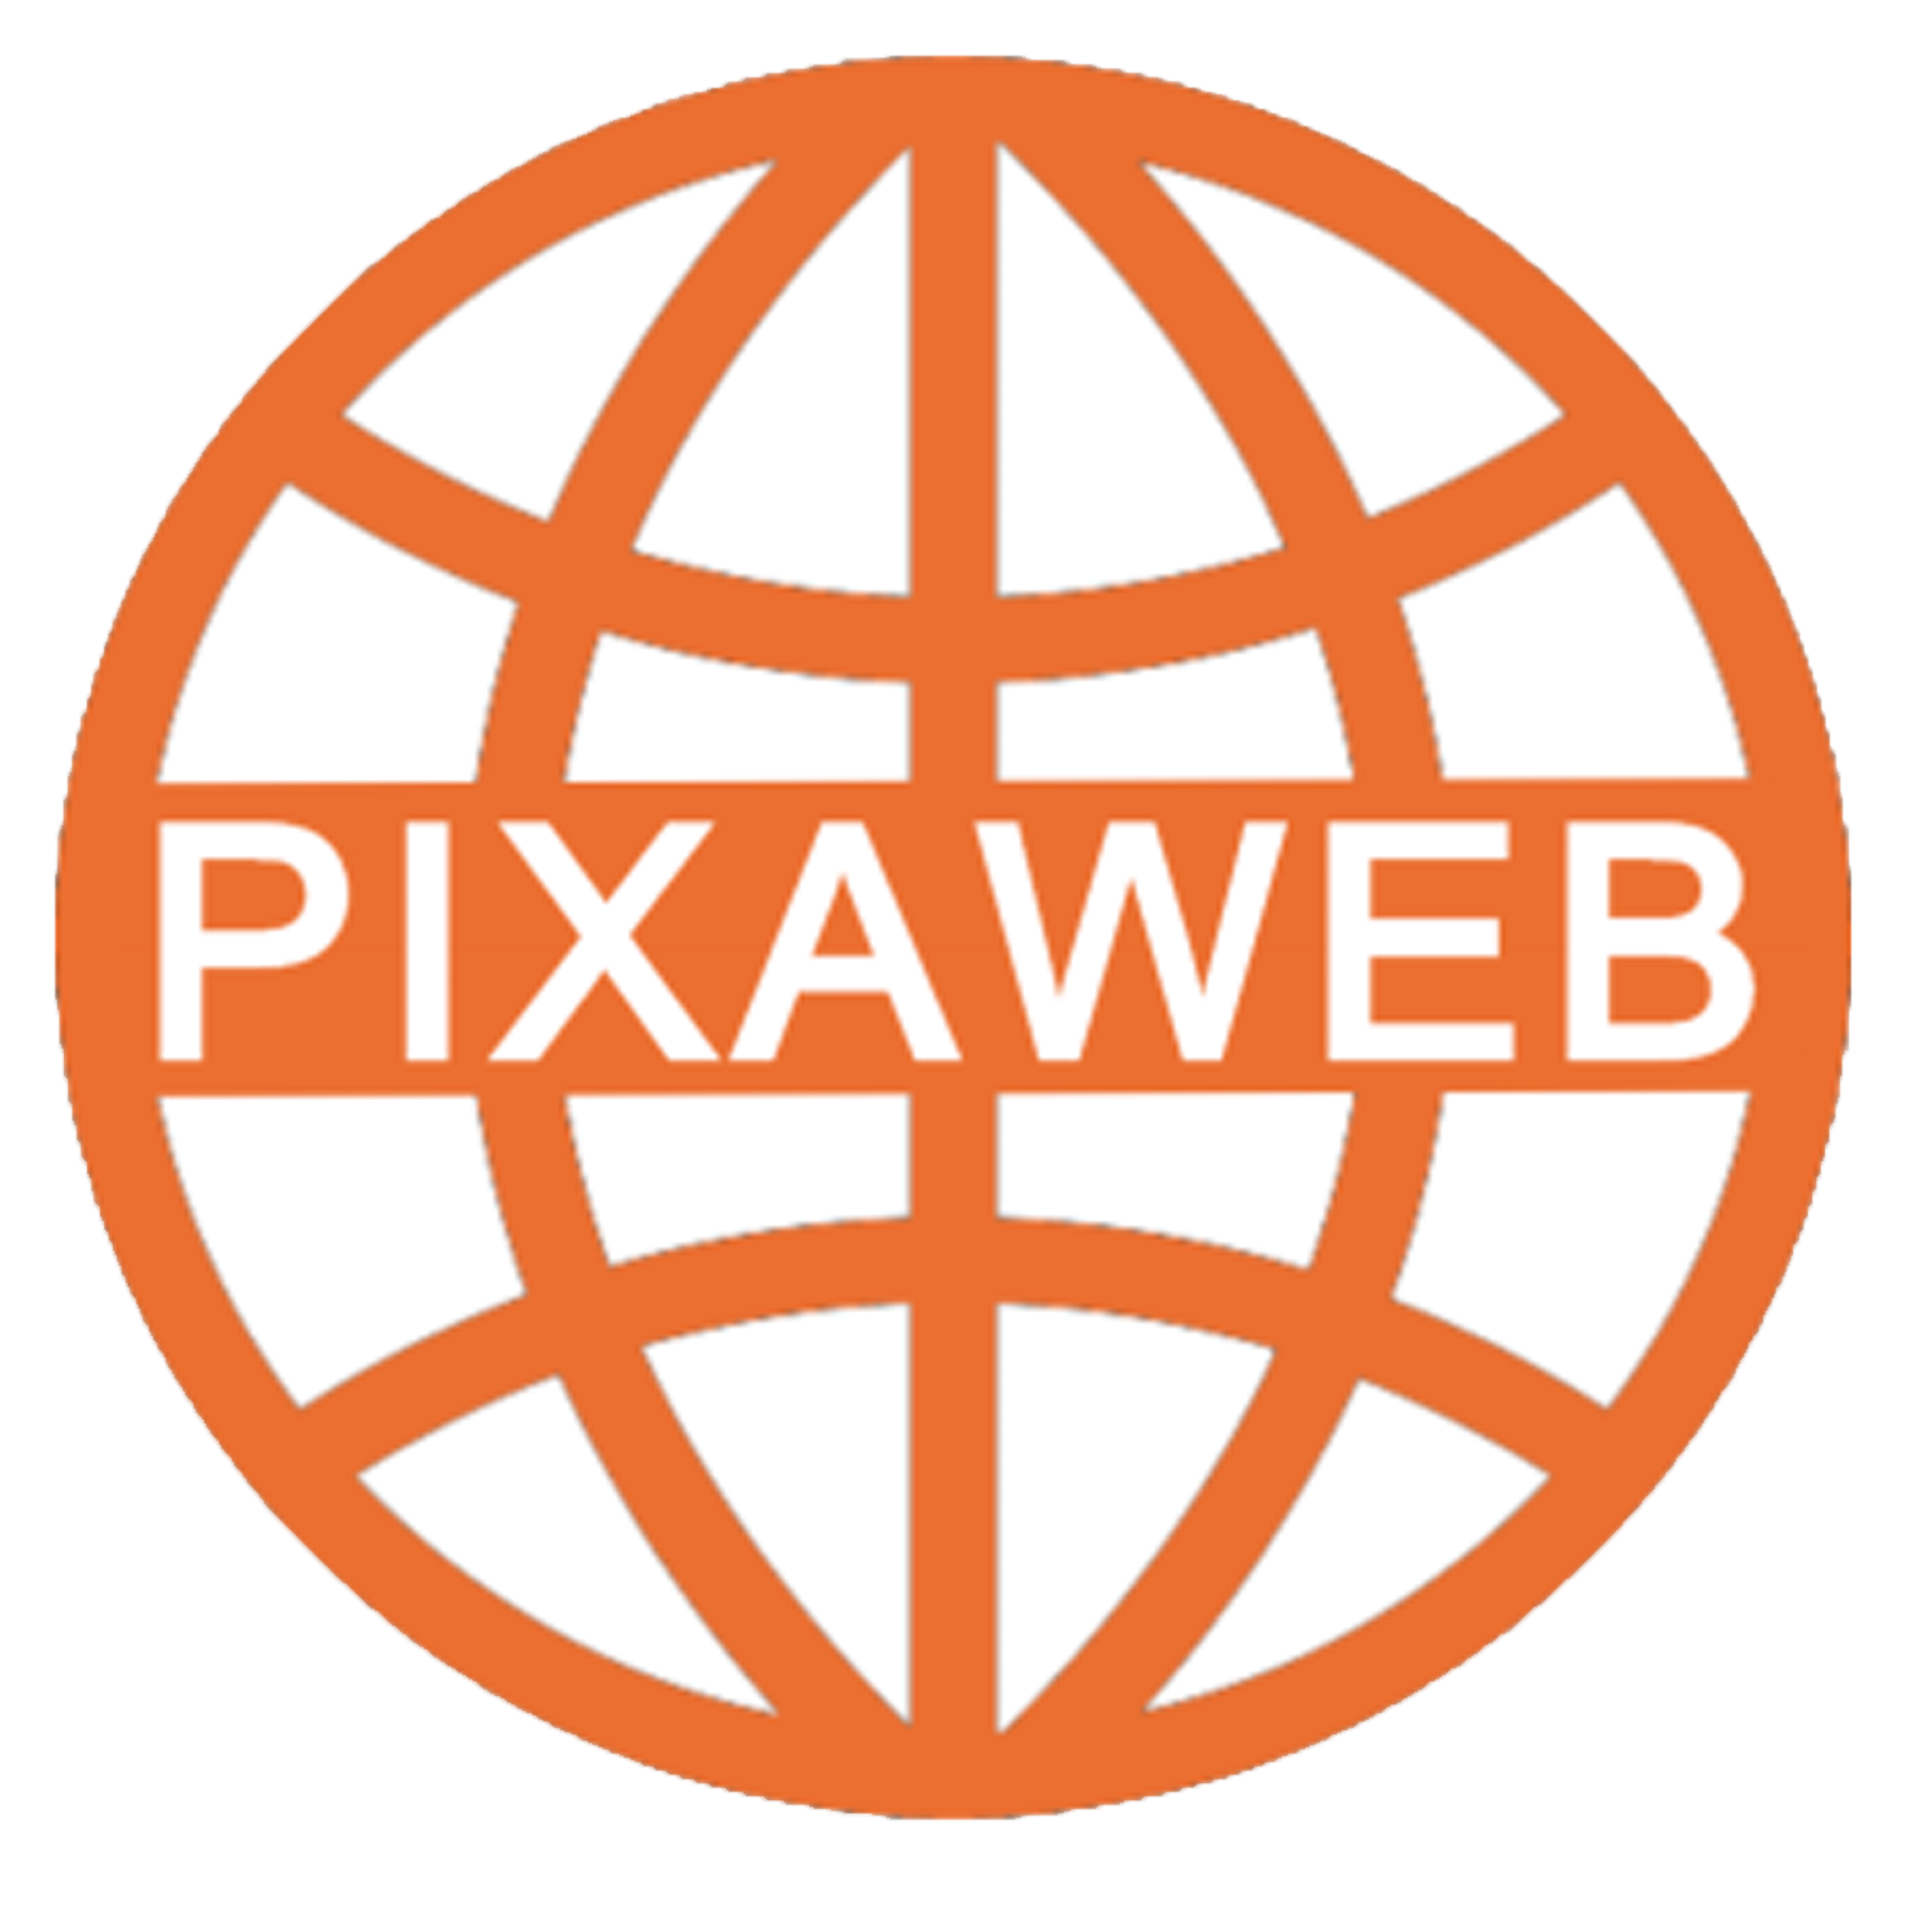 Pixaweb